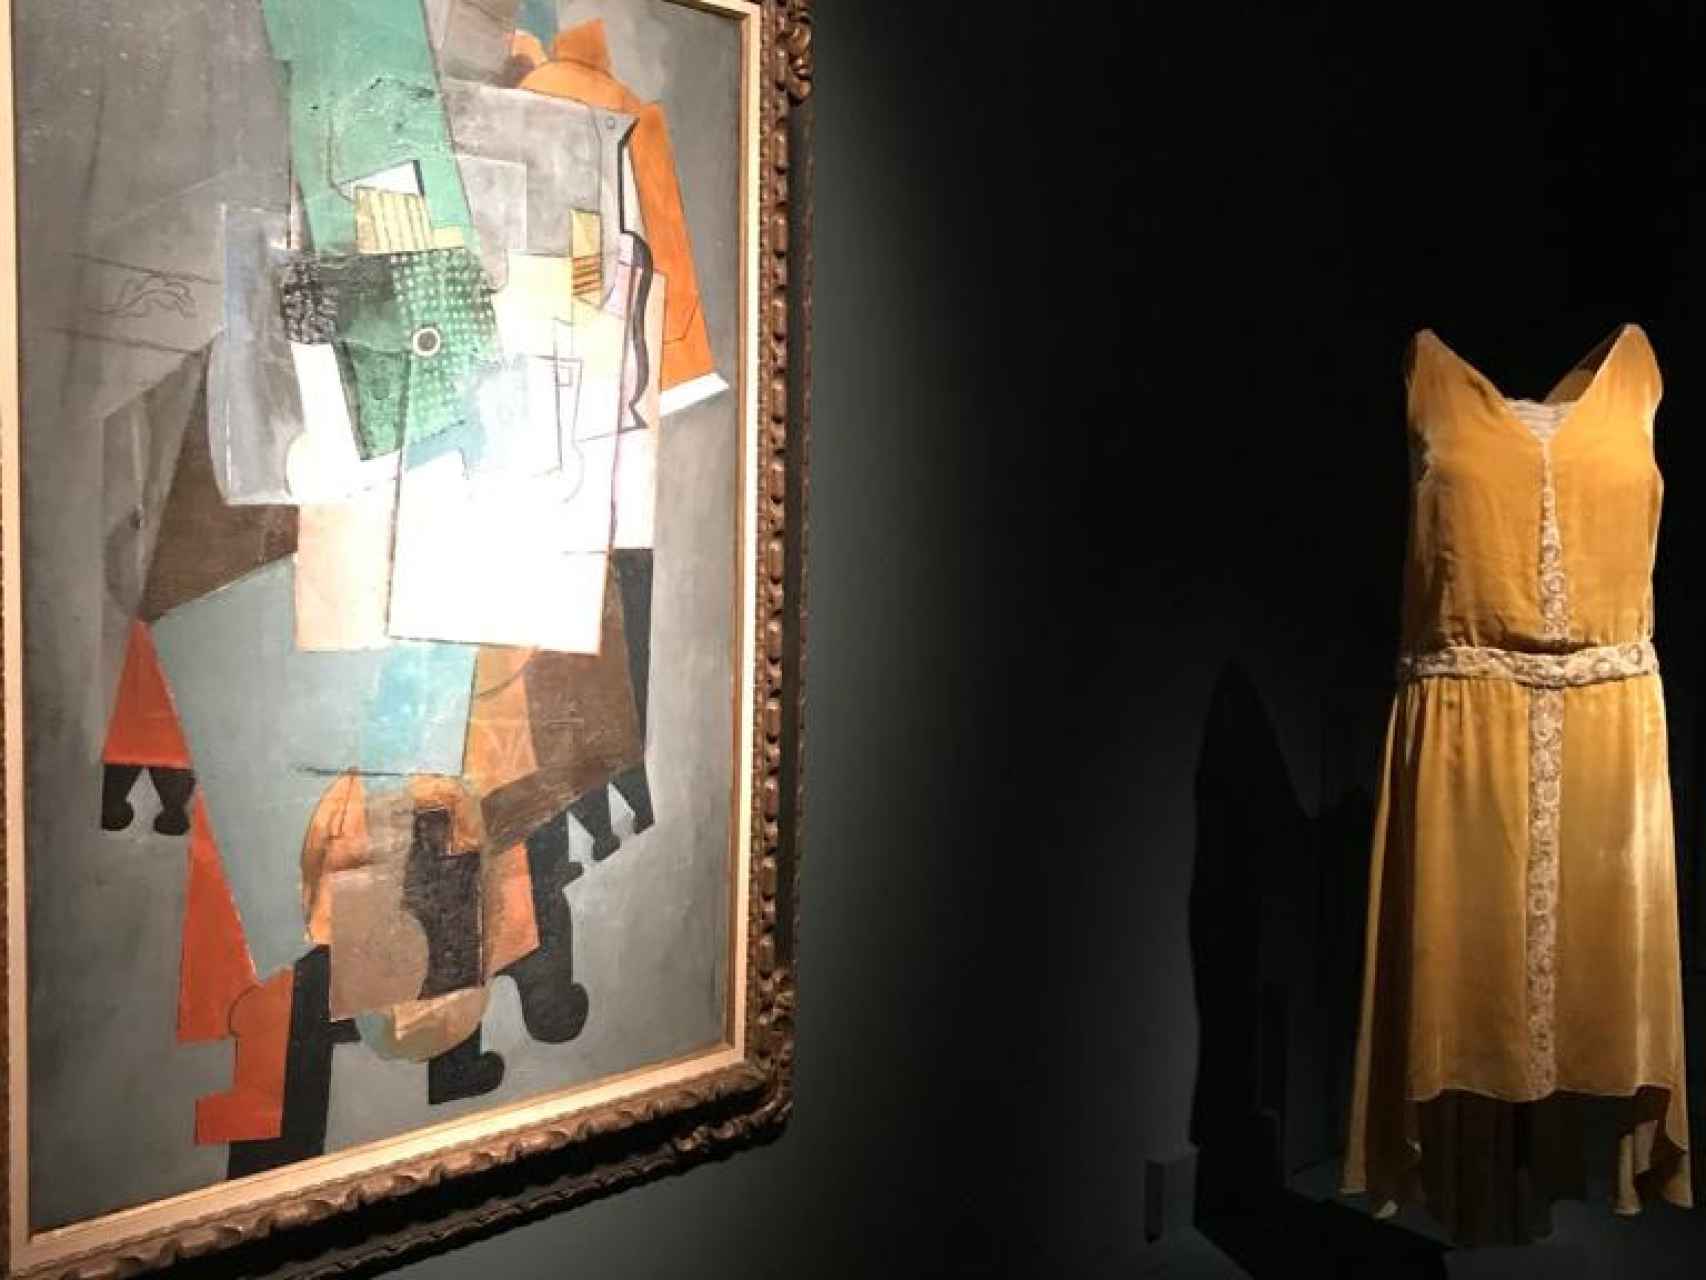 Cuadro 'Instrumentos de música sobre una mesa', de Picasso, 1914. Y vestido de noche en terciopelo, de Chanel, 1927-1928.